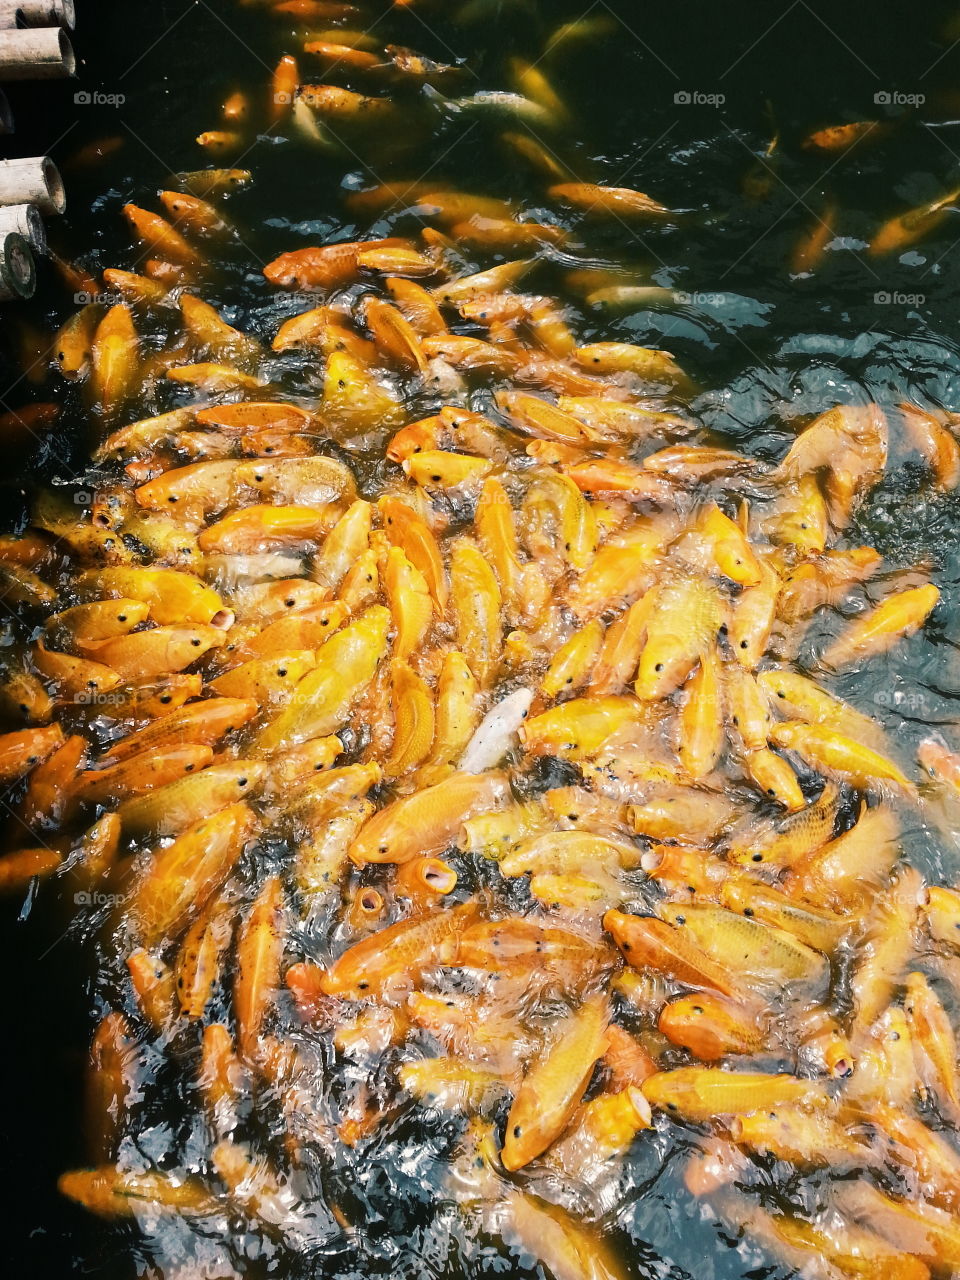 "Goldfish". at Bandung Floating market